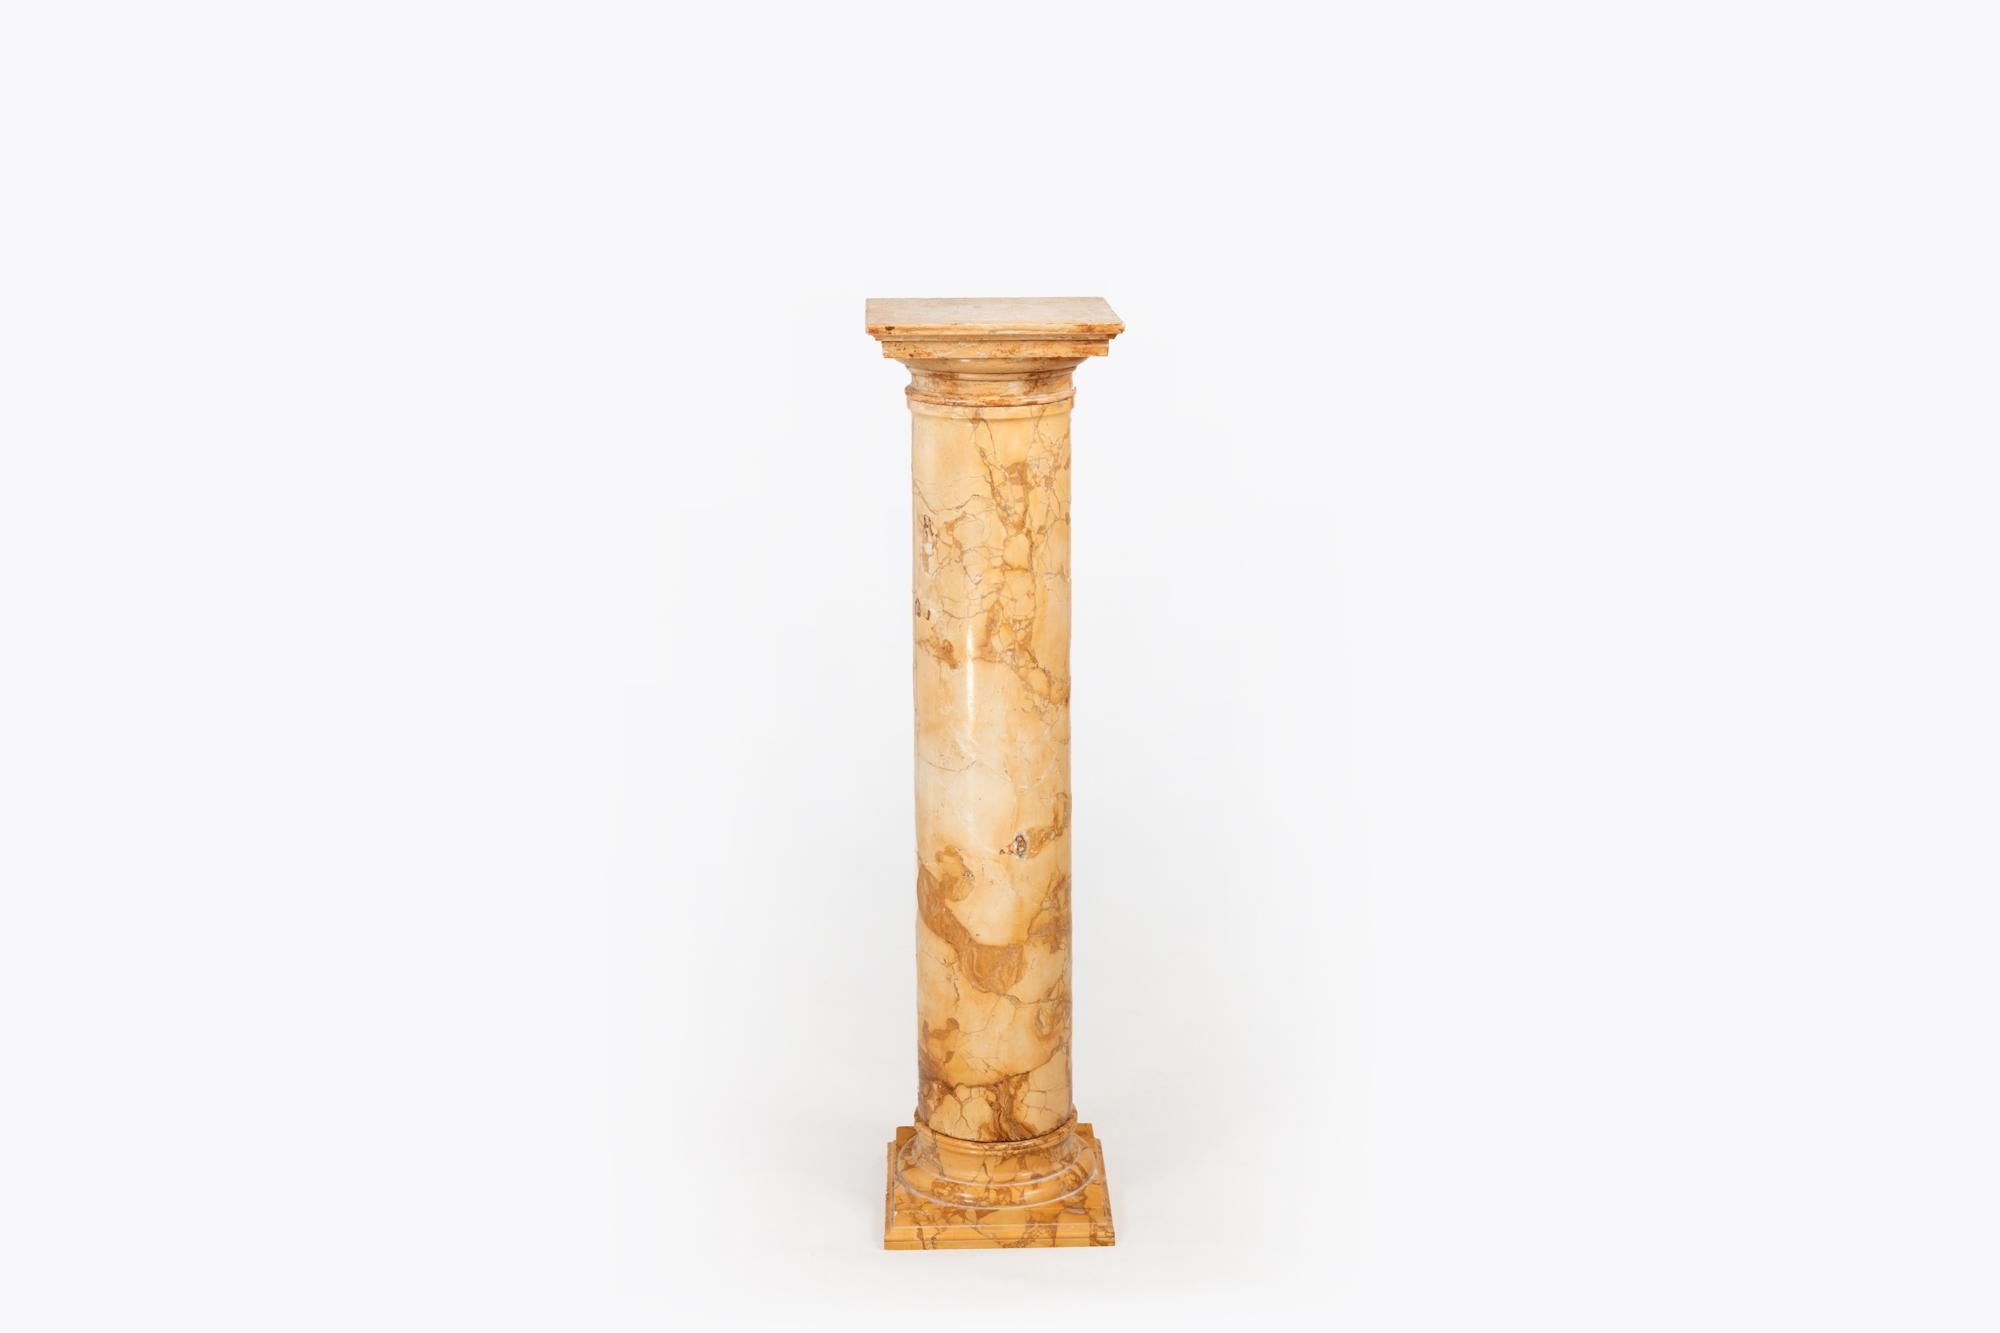 Marmorsockel aus dem 19. Jahrhundert in Form einer klassischen Säule. Der massive zylindrische Korpus aus gelbem und ockerfarbenem Marmor ruht auf einem abgestuften quadratischen Sockel und wird von einer quadratischen Marmorplatte gekrönt, die auf